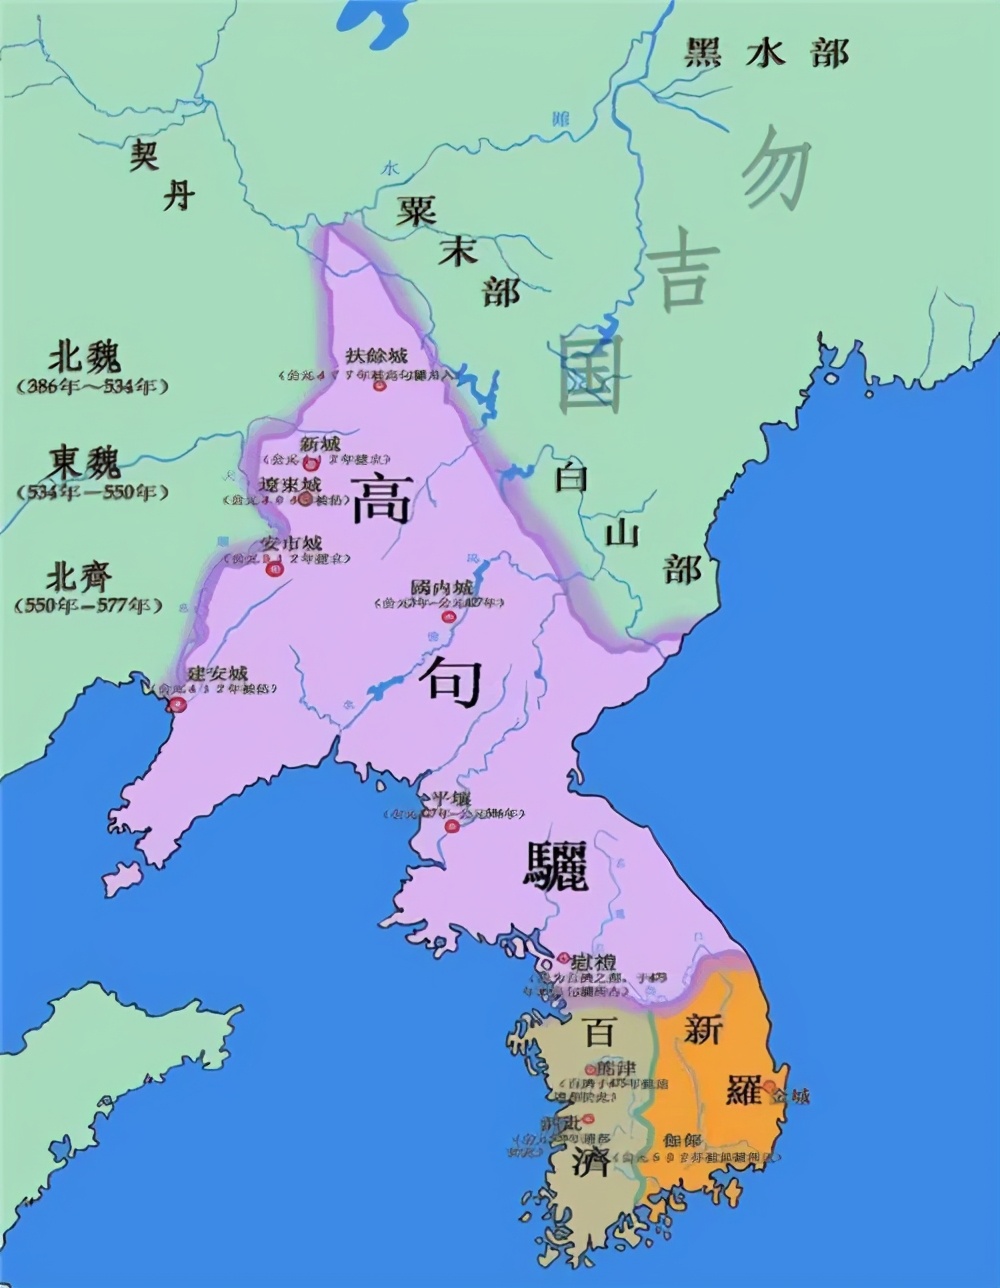 韩国为什么对东三省念念不忘 你看他们绘制的古代地图 便明白了 资讯咖